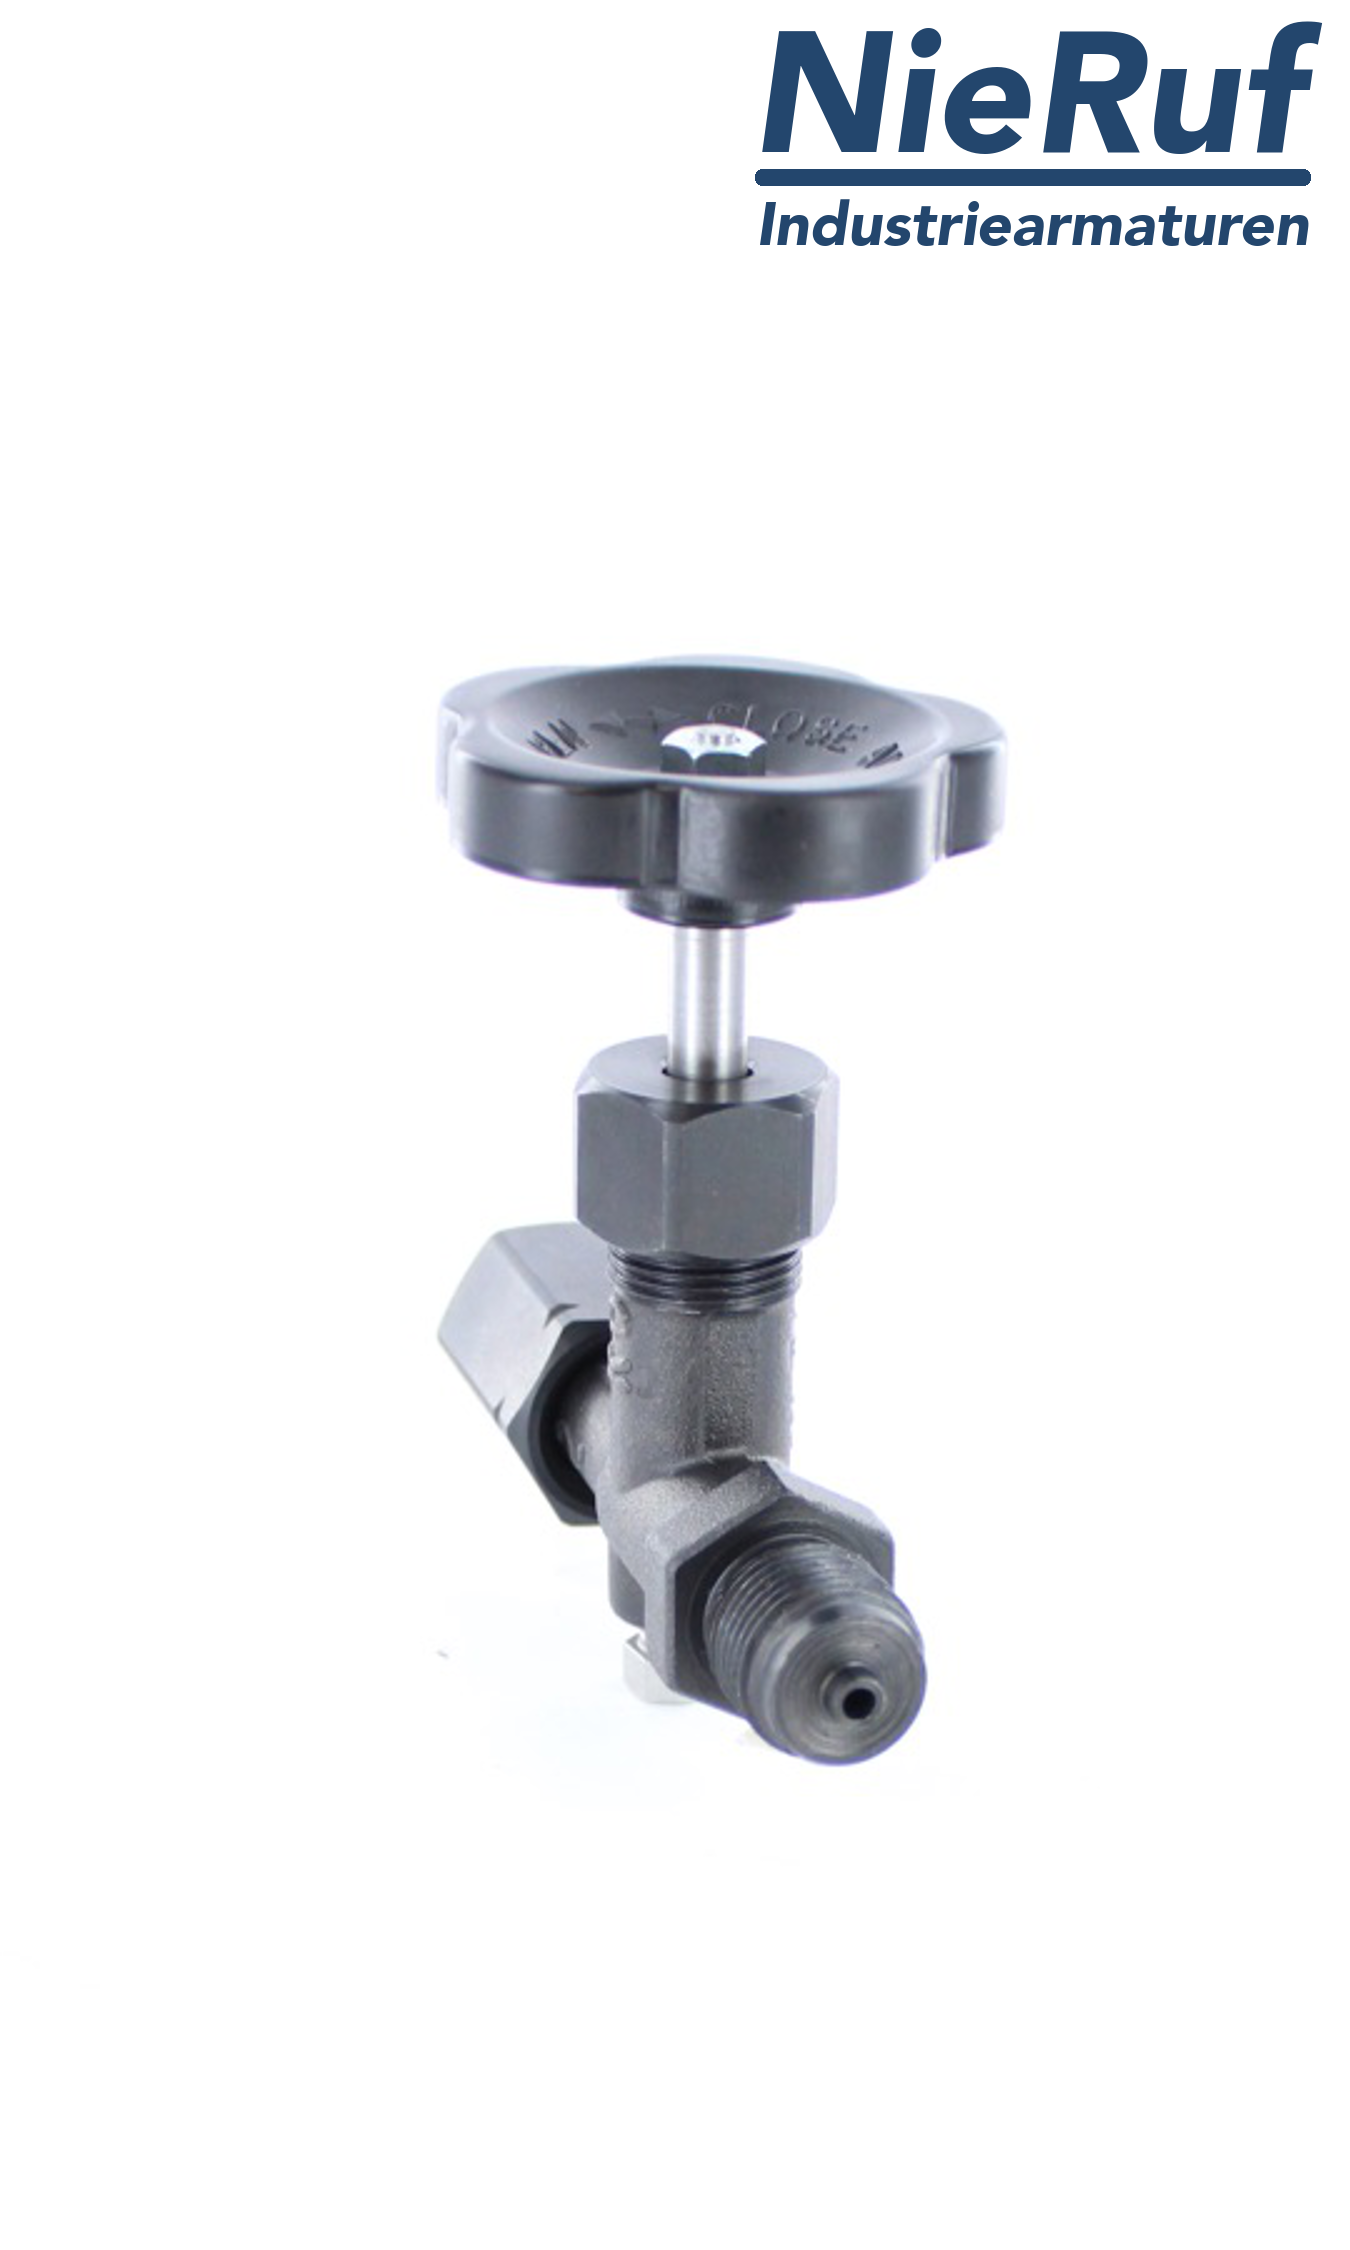 manometer gauge valves male thread x adapter for instrument holder with nut adjustable DIN 16270 steel 1.0460 400 bar